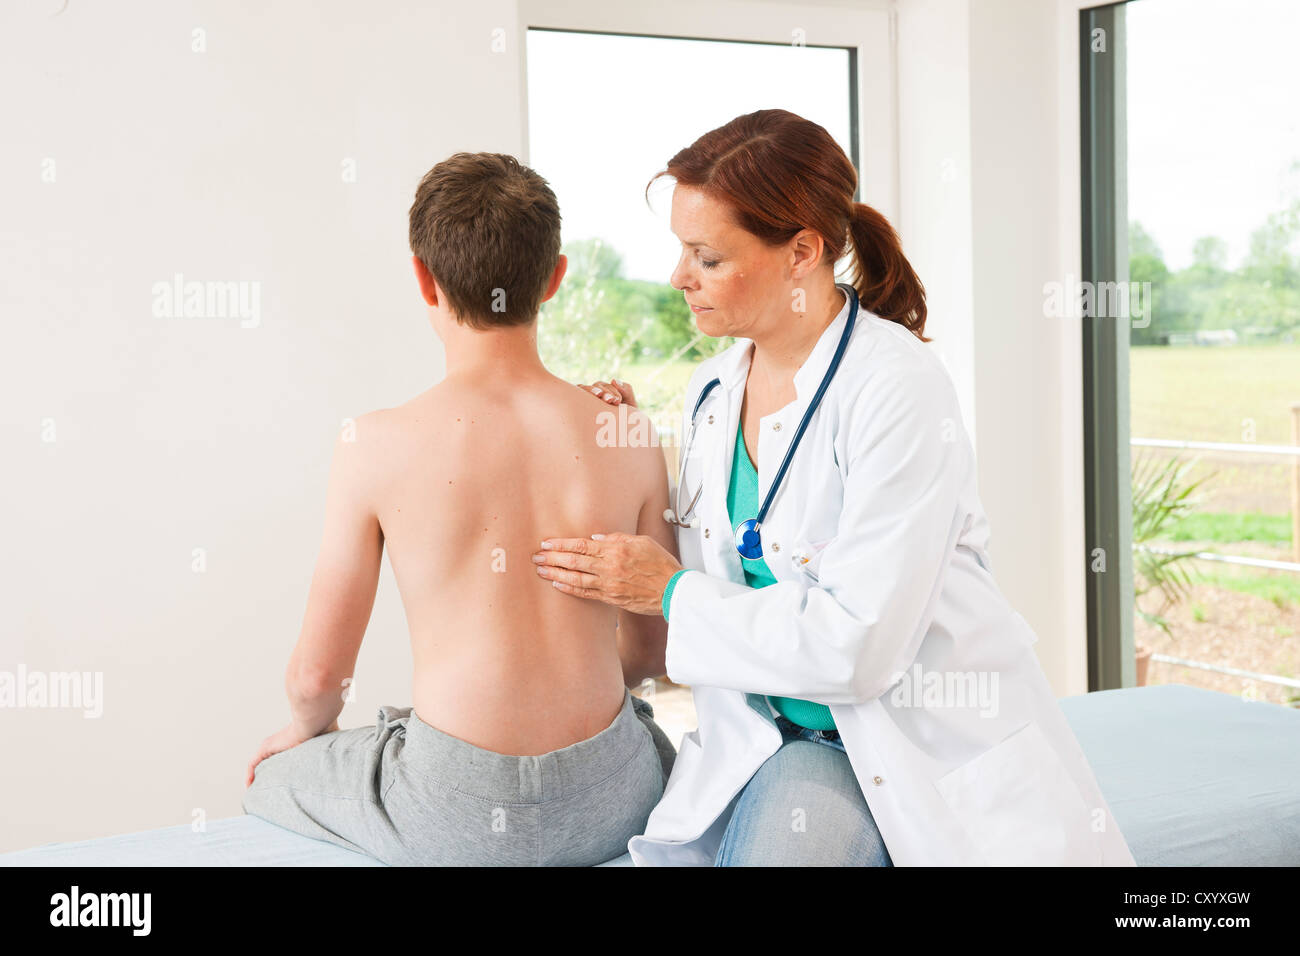 Врач по пояснице. Врач осматривает спину. Врач вертебролог. Осмотр позвоночника врачом. Врач осматривает пациента.